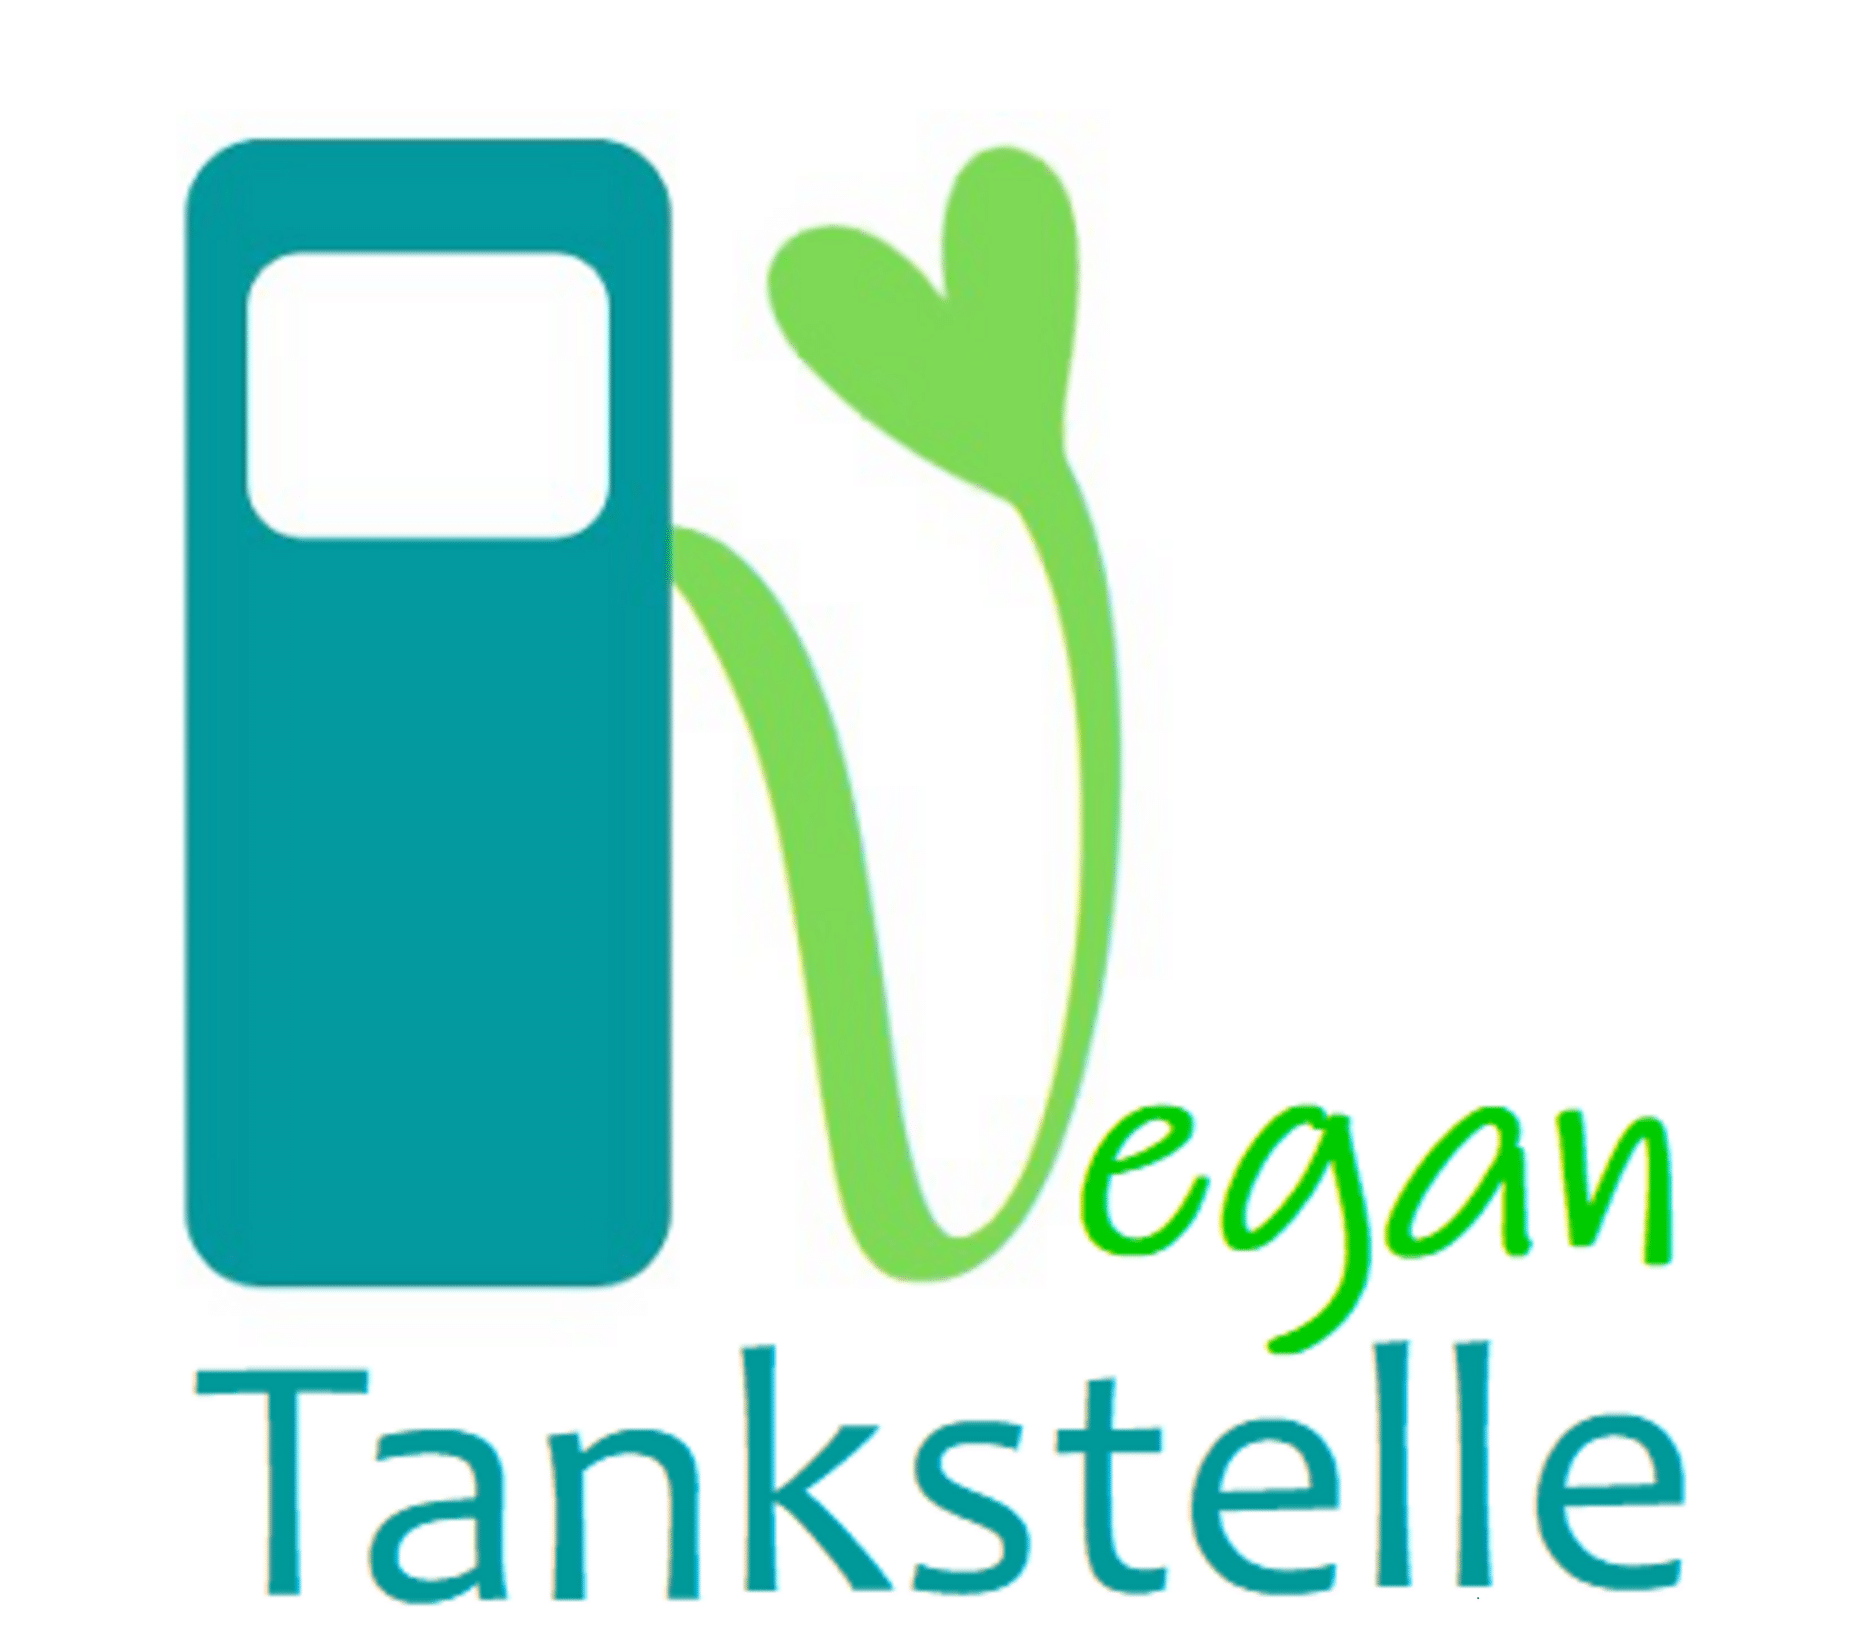 Vegan-Tankstelle Ingolstadt + Titelbild + Ernährung